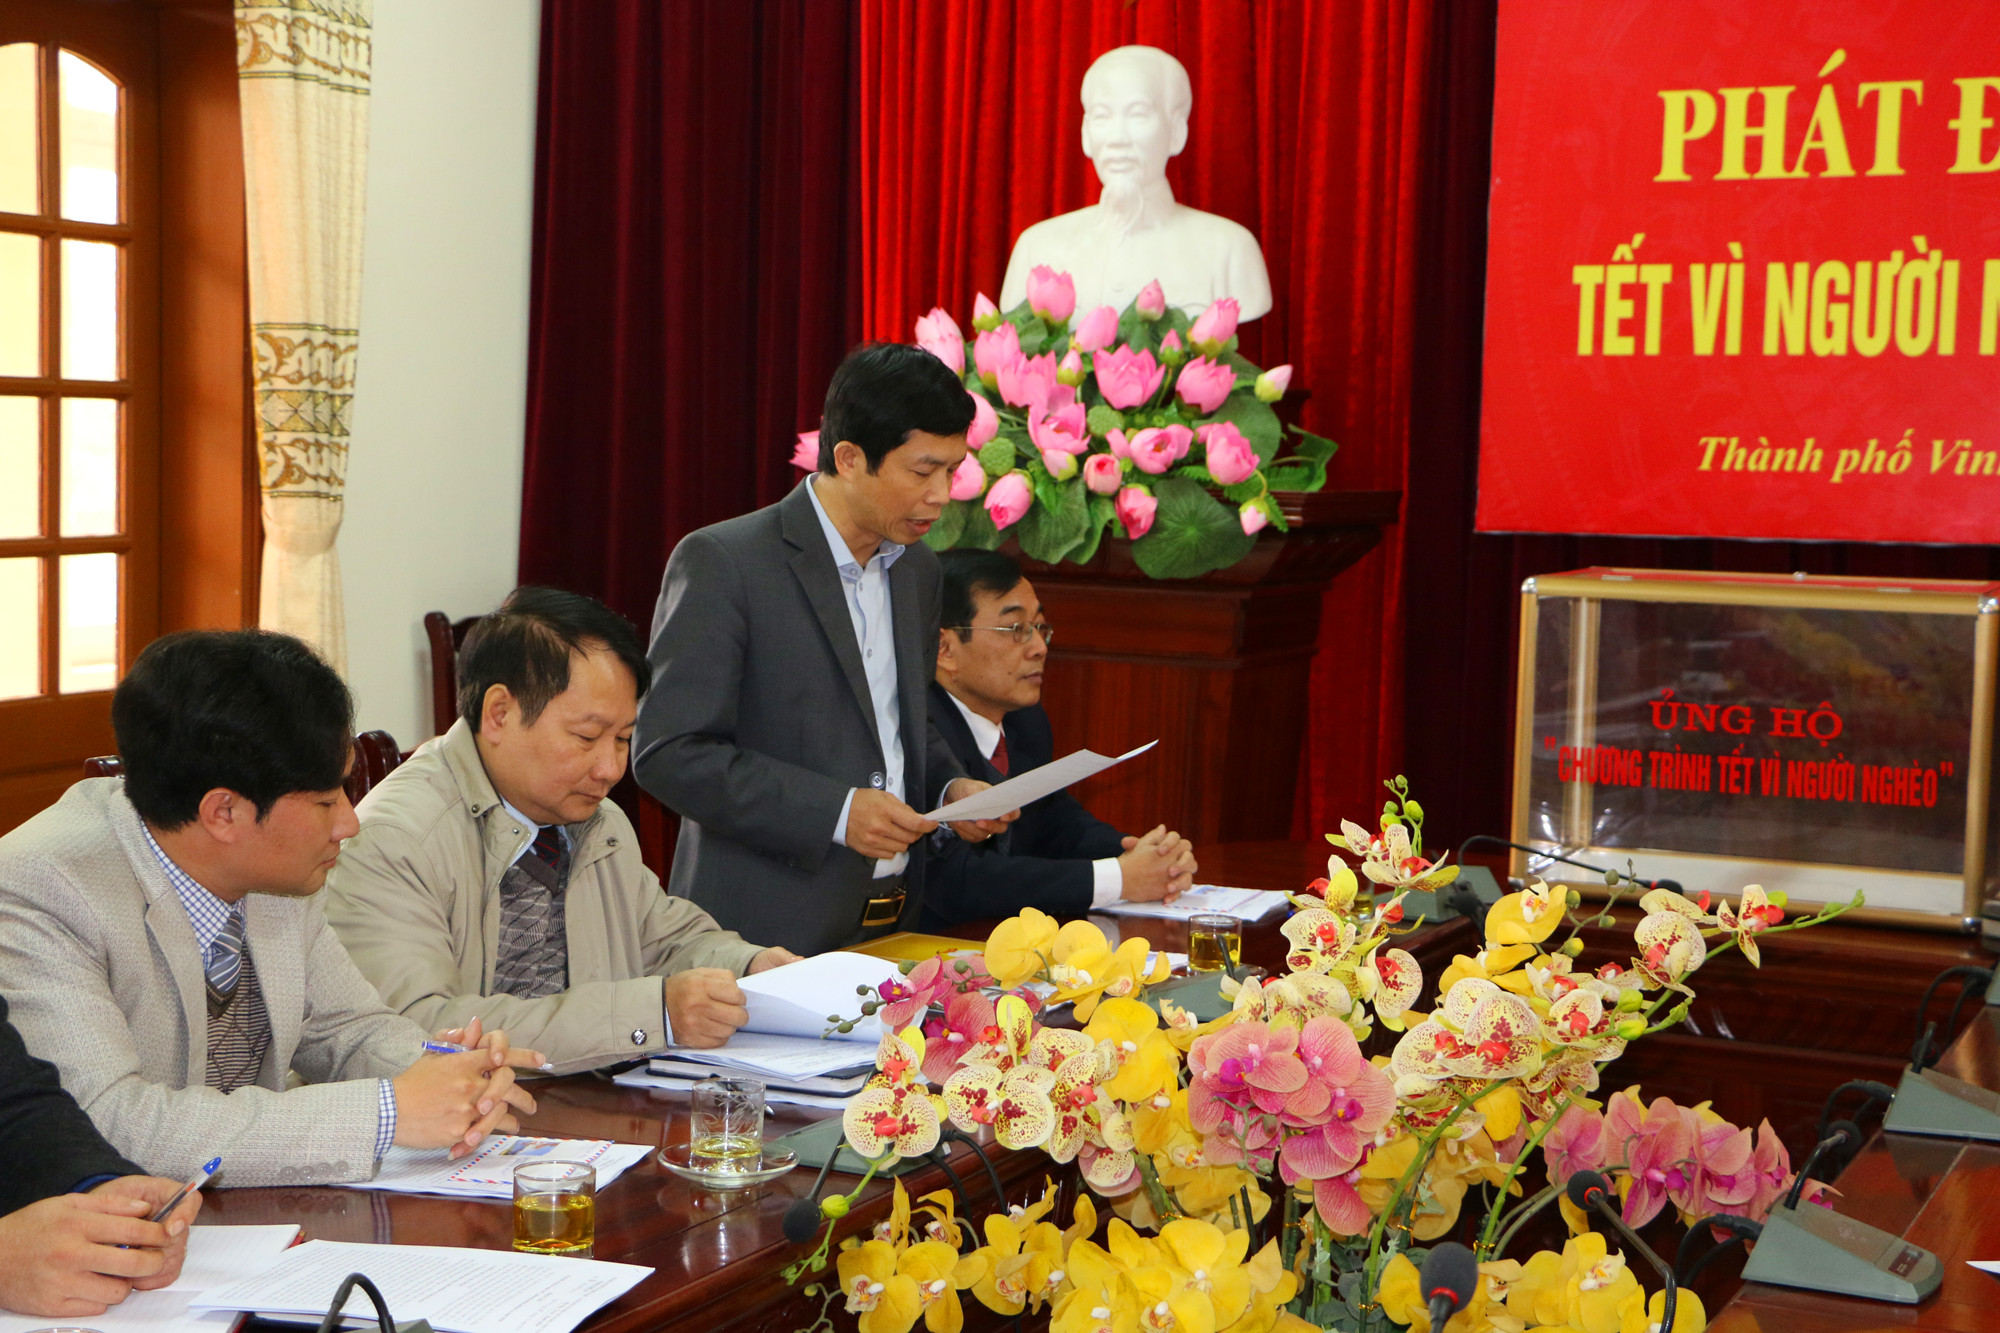 Ông Vương Quang Minh -Phó Chủ tịch UB MTTQ tỉnh đọc Thư kêu gọi ủng hộ Tết vì người nghèo của Bí thư Tỉnh ủy. Ảnh: Nguyễn Hải